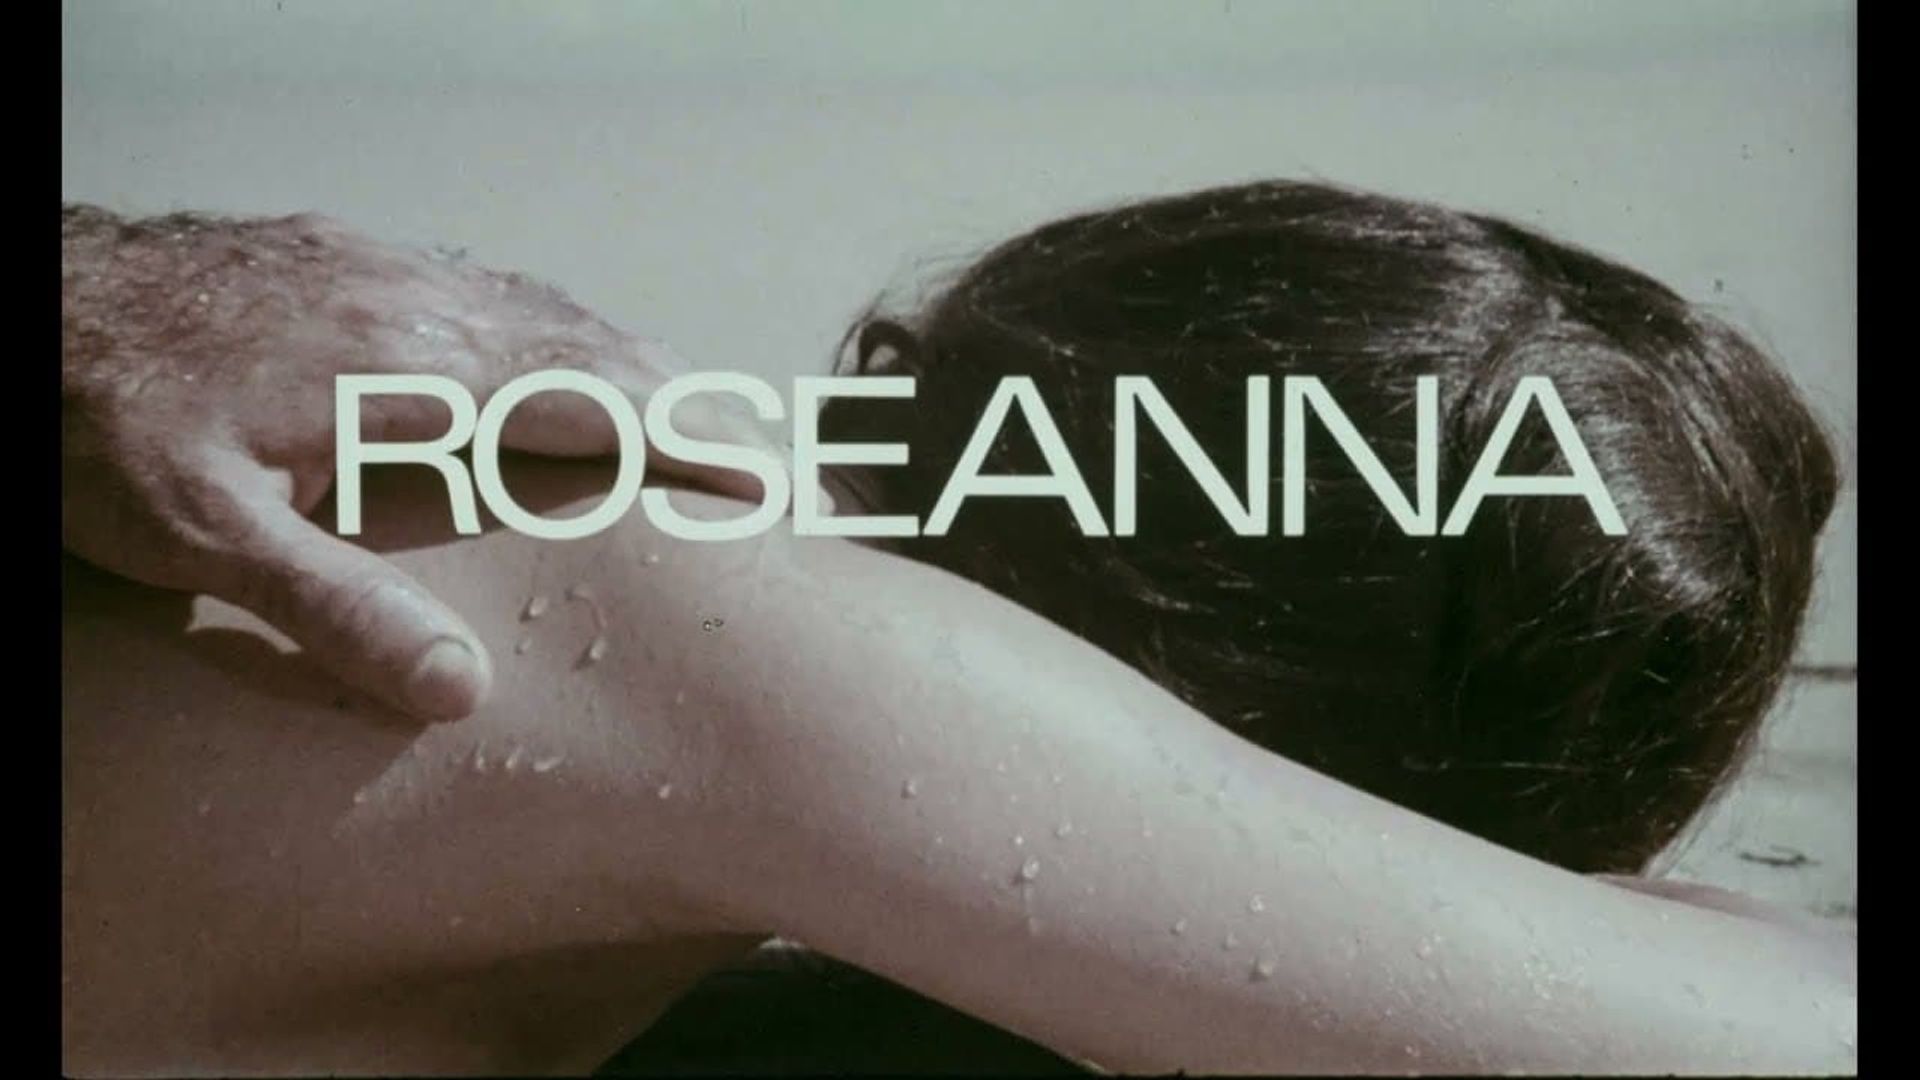 Roseanna background